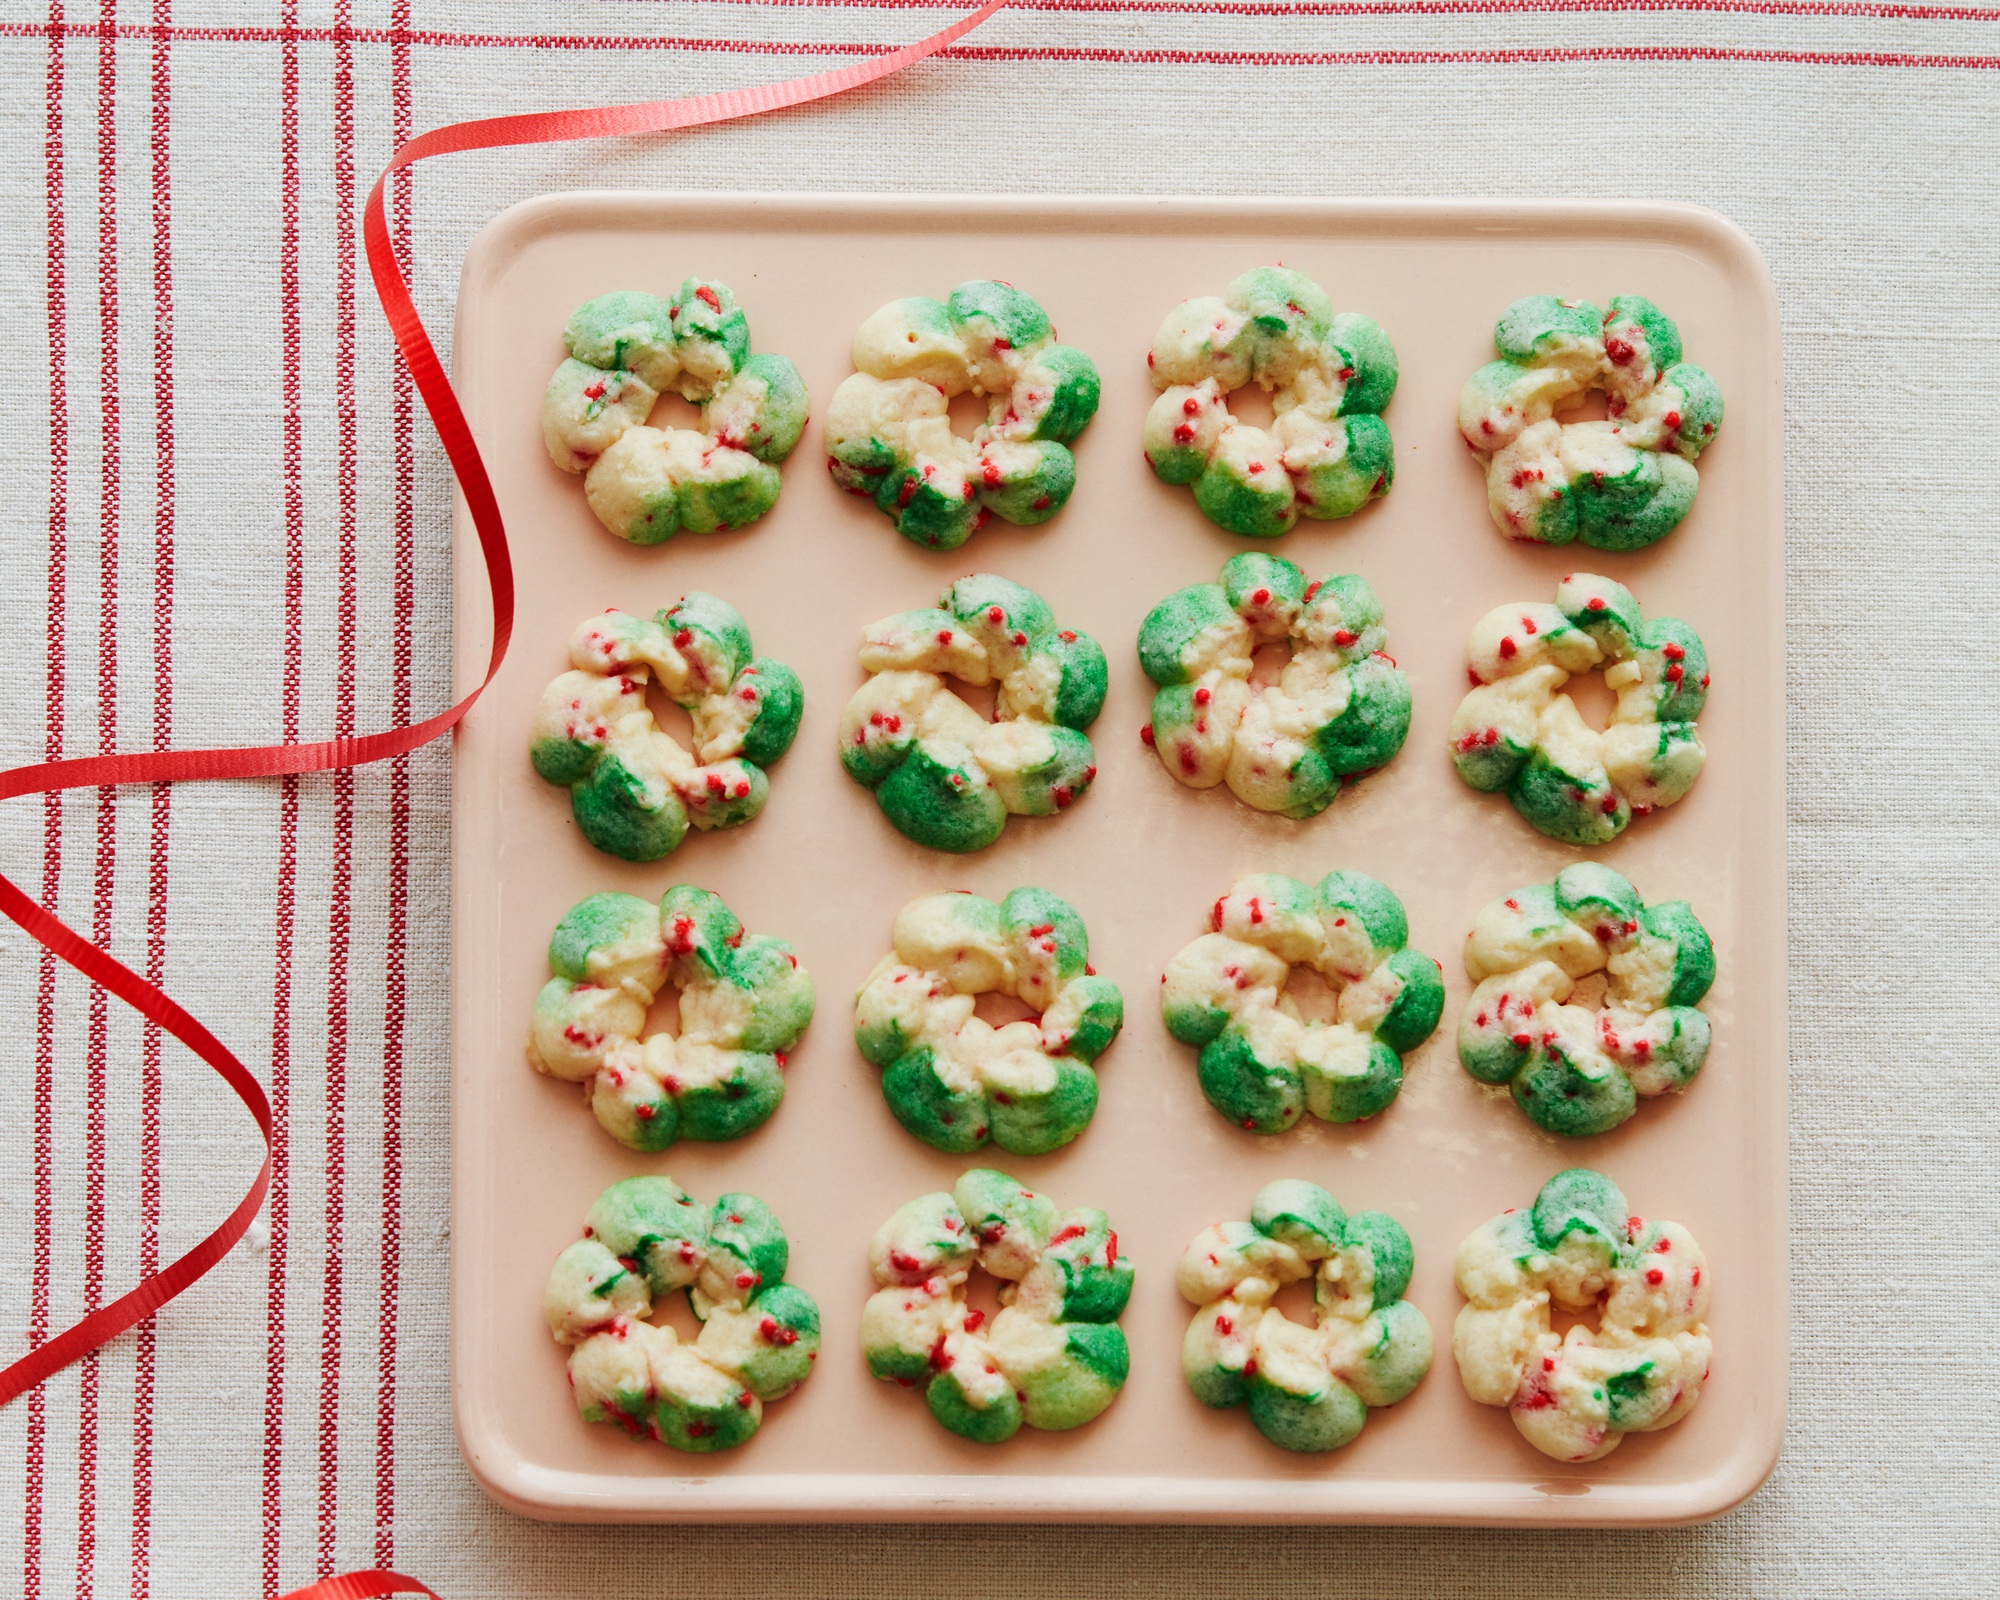 Ngắm những chiếc bánh quy vừa đẹp vừa ngon đặc biệt dành cho lễ Giáng sinh - Ảnh 13.